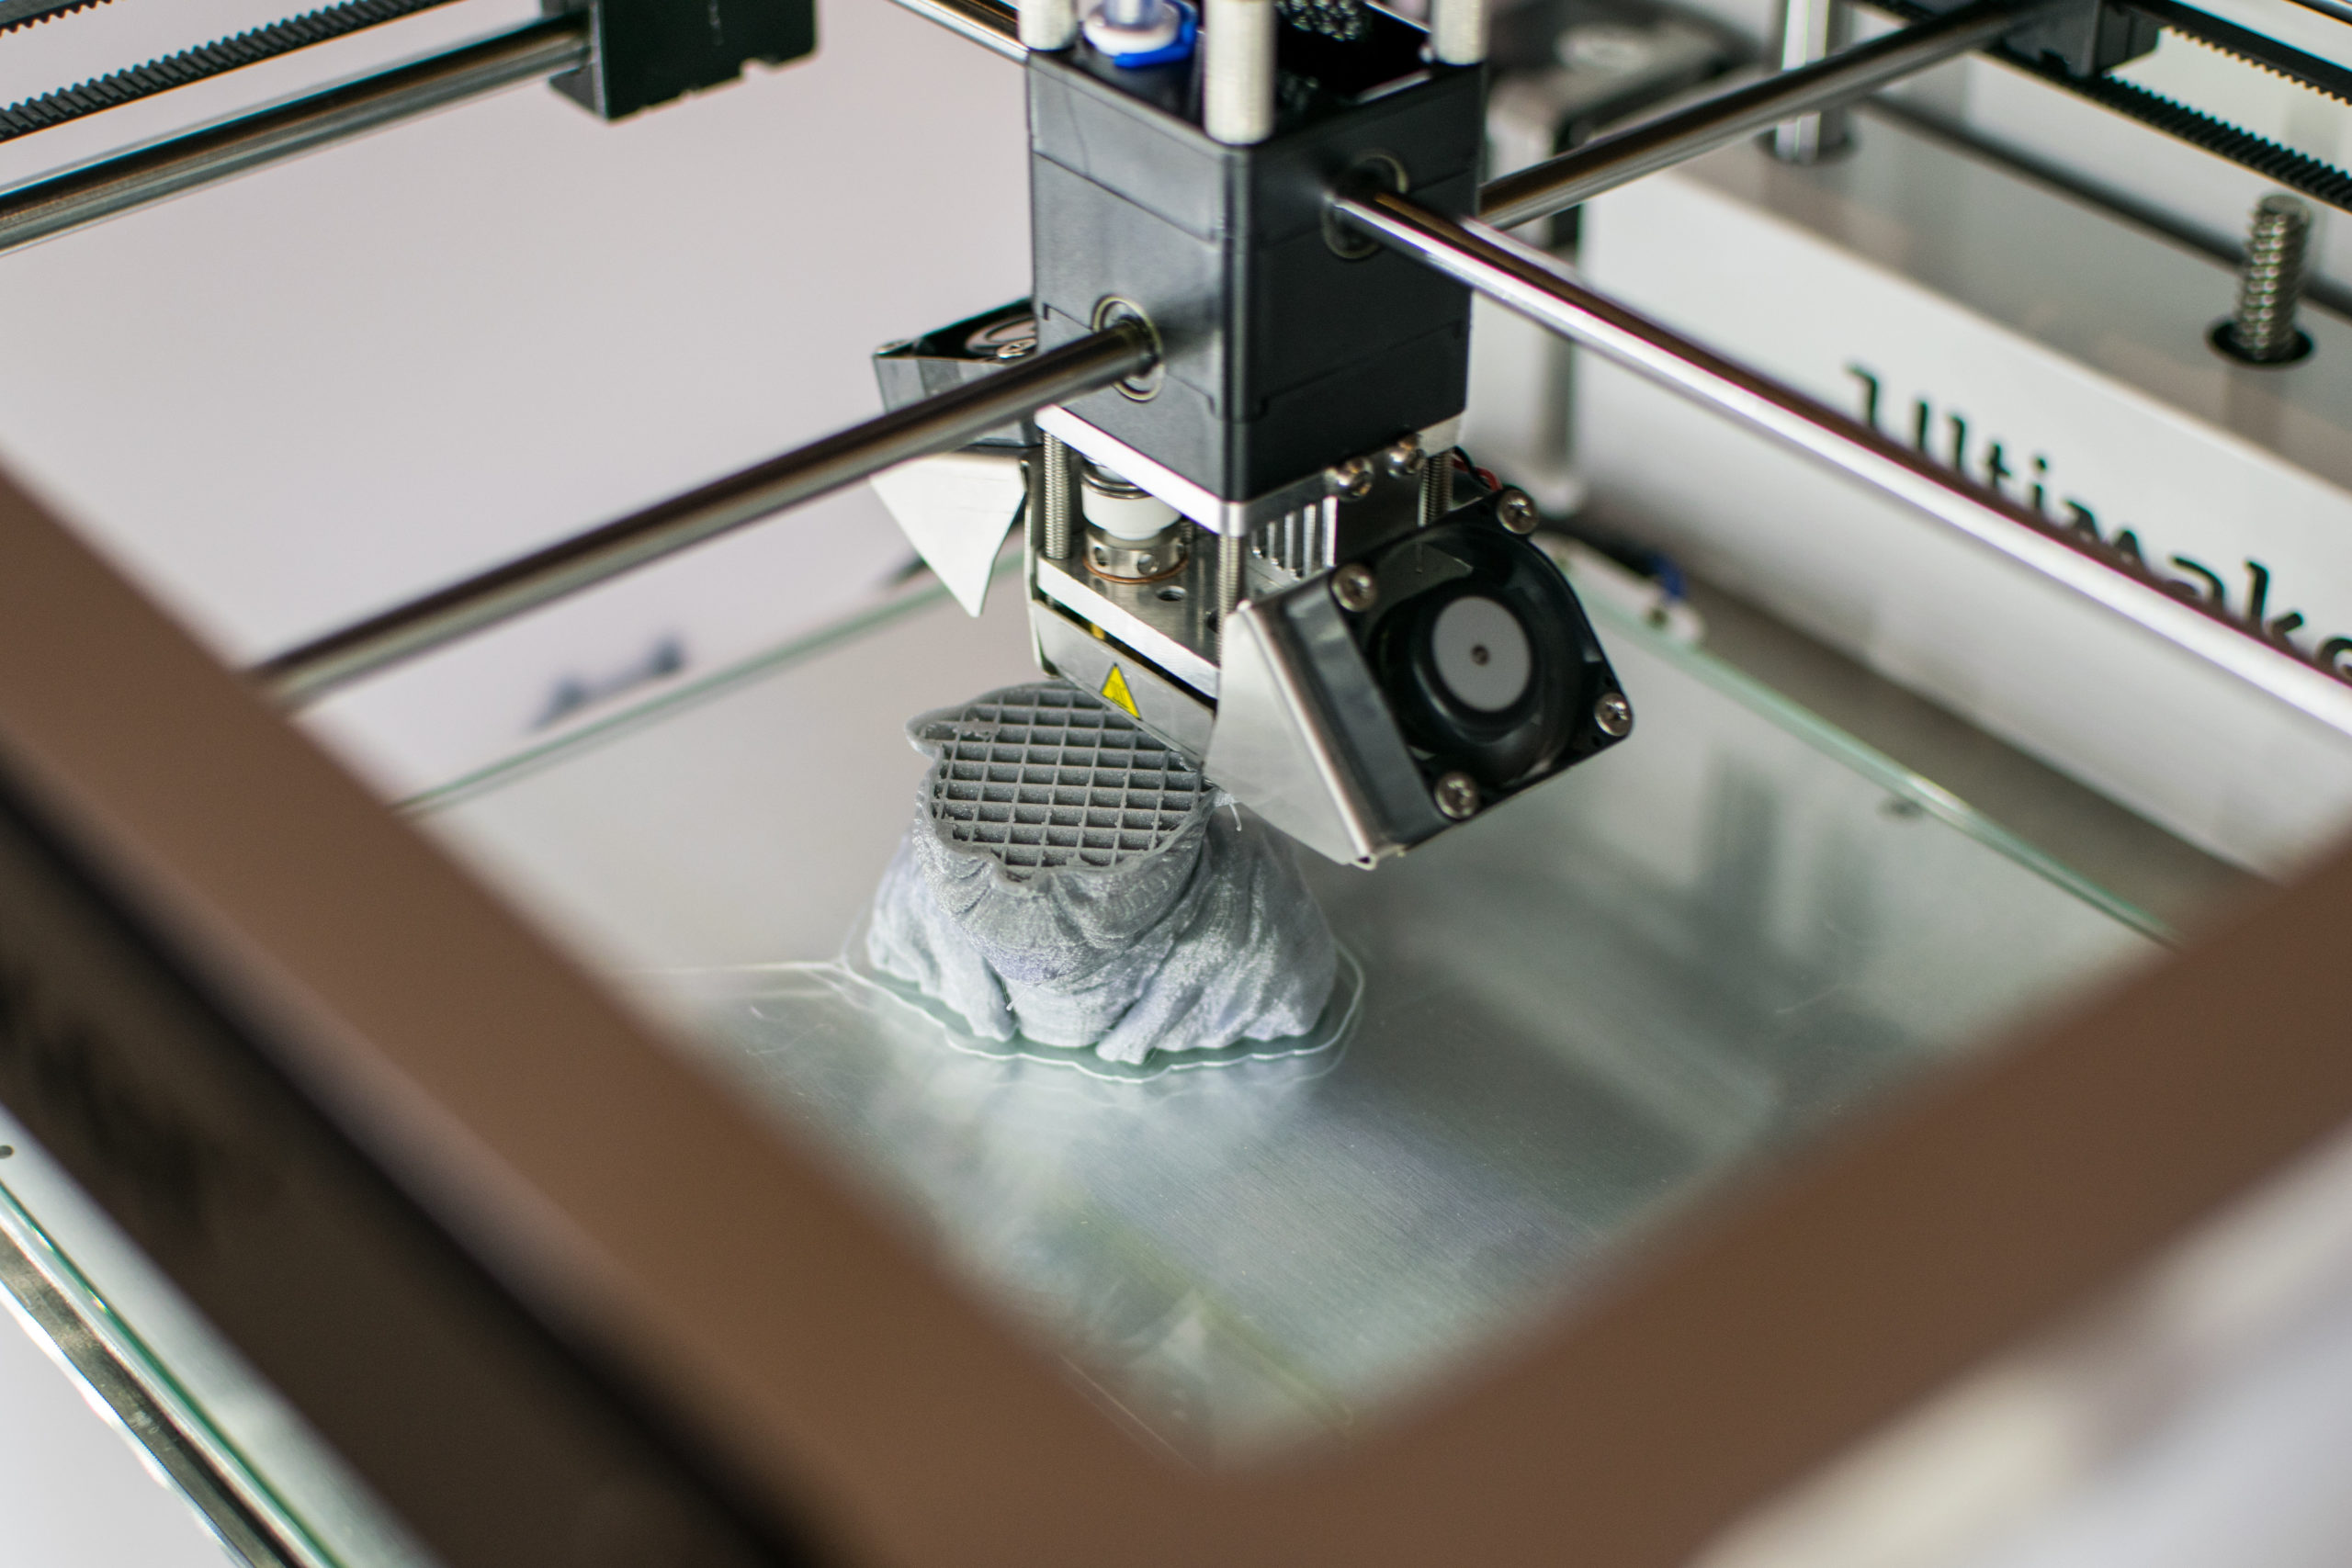 Imprimante 3D en cours d'impression d'un Yoda en résine grise dans un des laboratoires numériques.